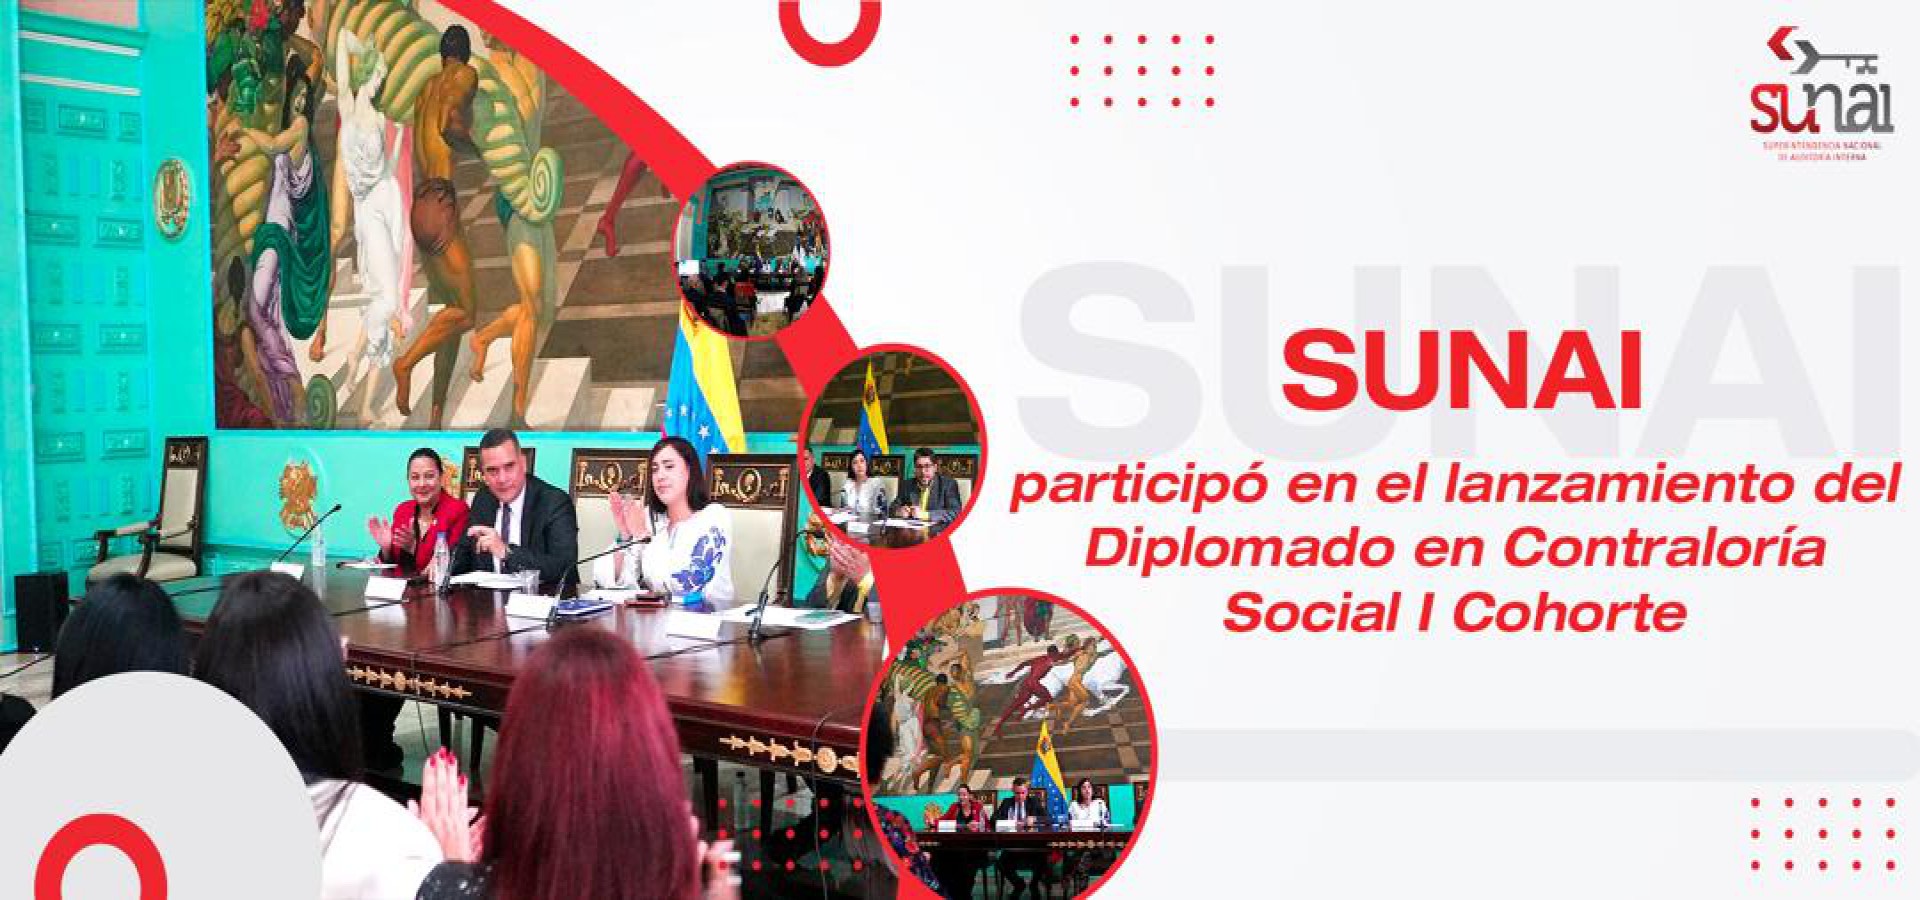 SUNAI participó en el lanzamiento del Diplomado en Contraloría Social I Cohorte